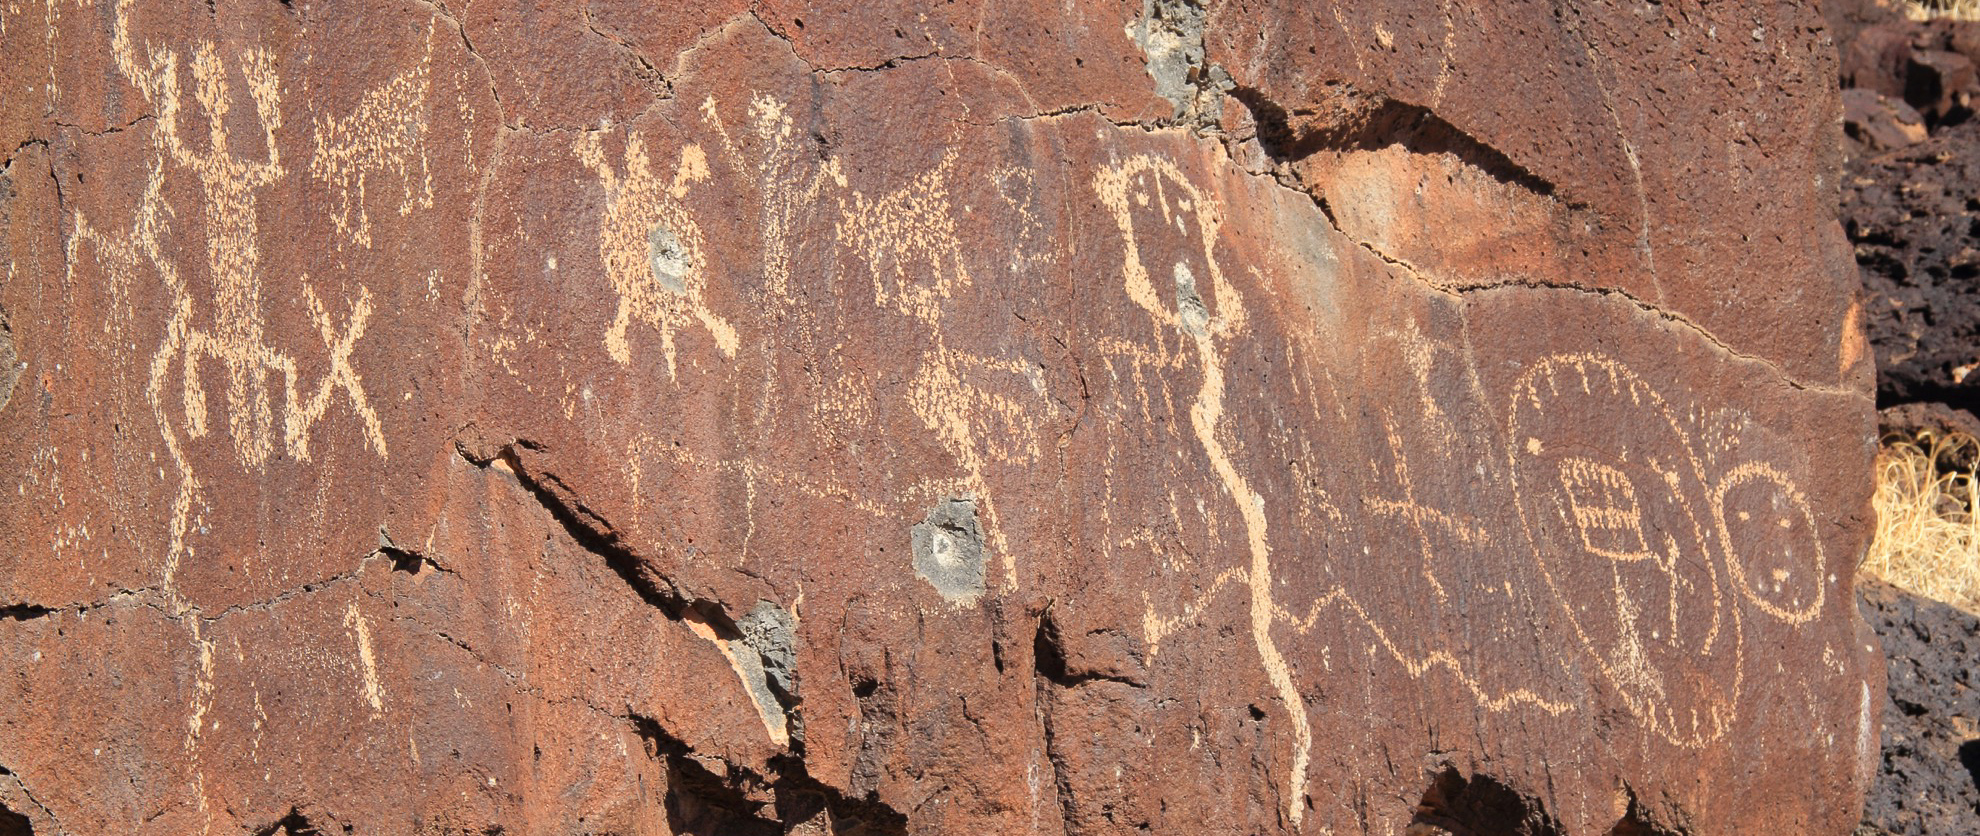 Dónde ver petroglifos en los Estados Unidos - 9